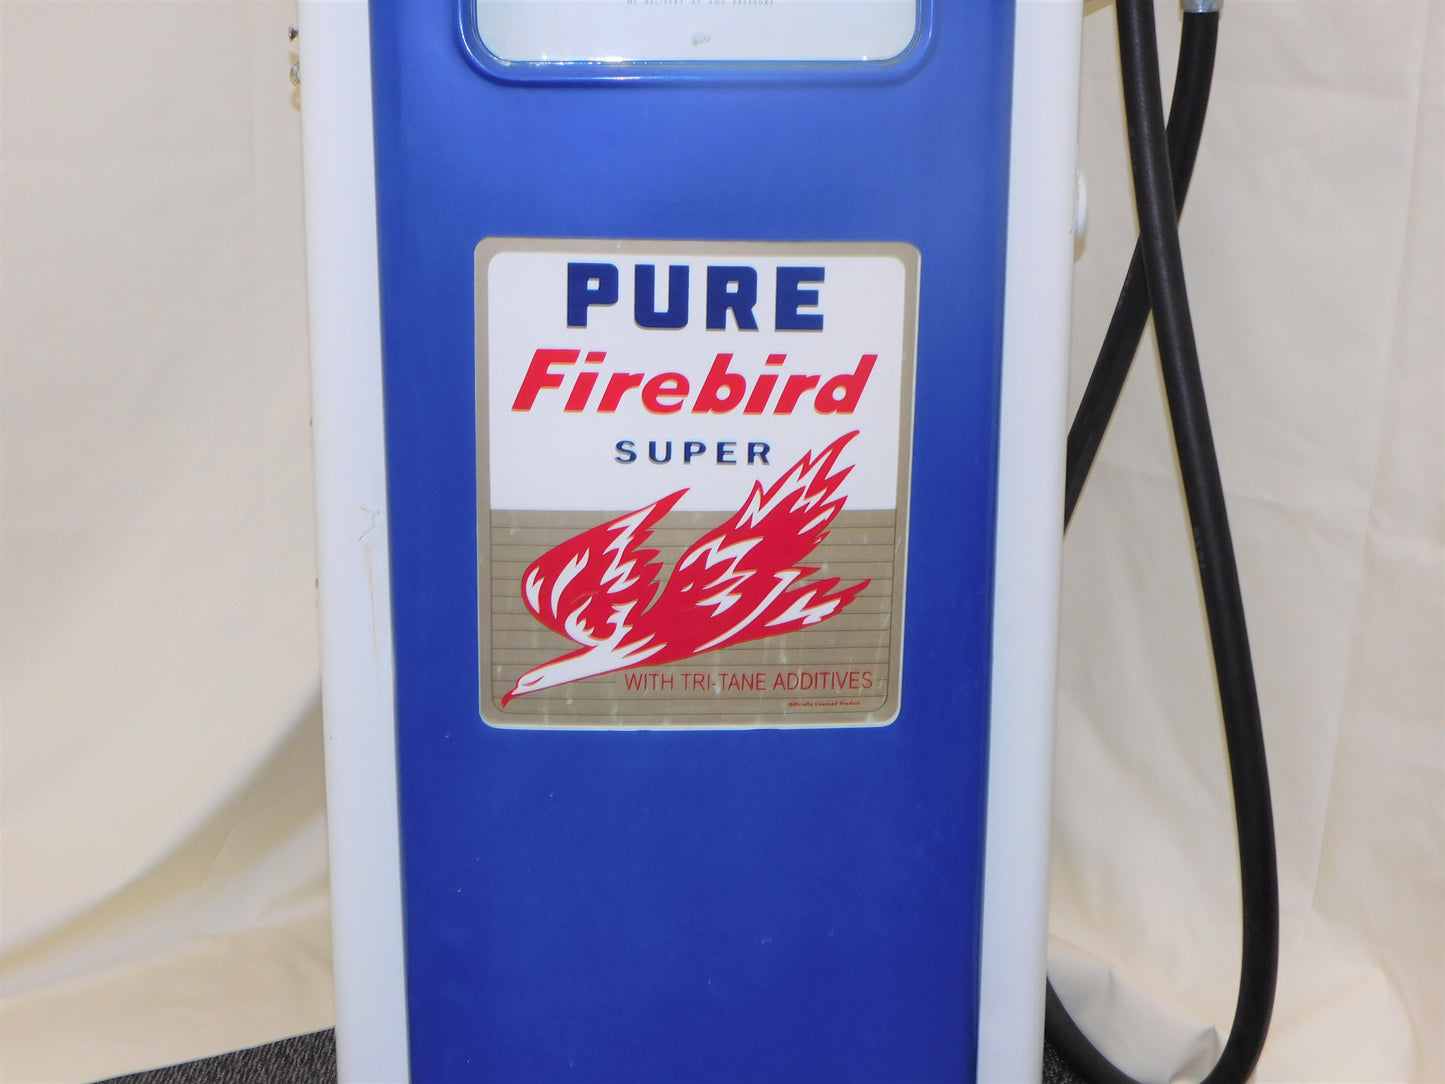 Pure Firebird Tokheim Gas Pump